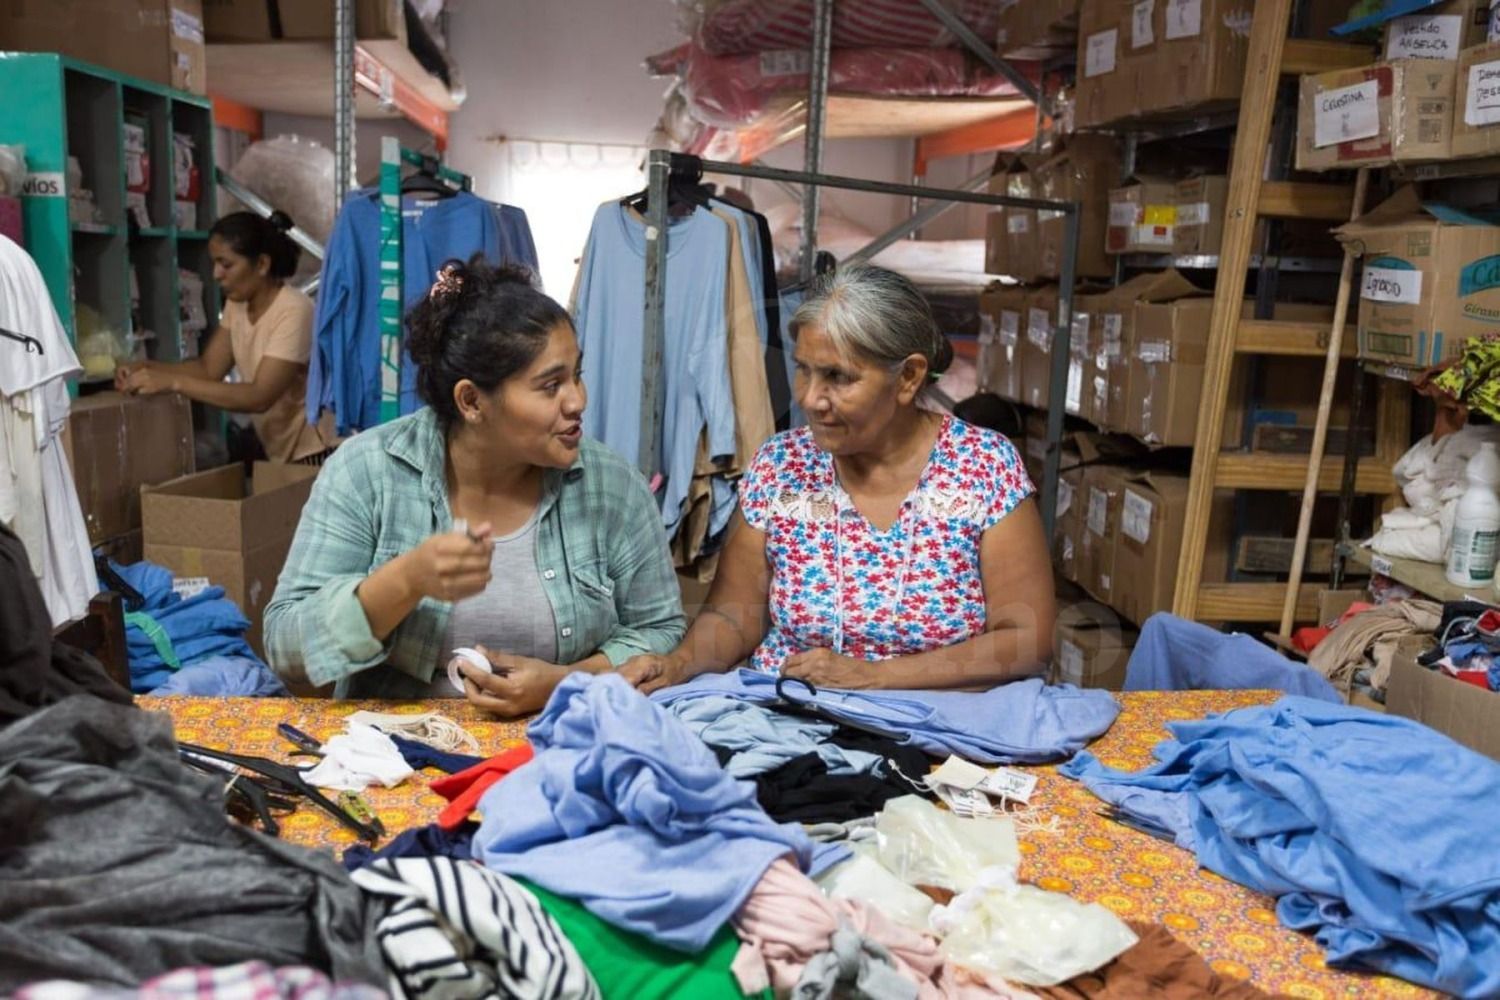 Lhaka, la textil wichi que se adapta a la pandemia cosiendo miles de barbijos